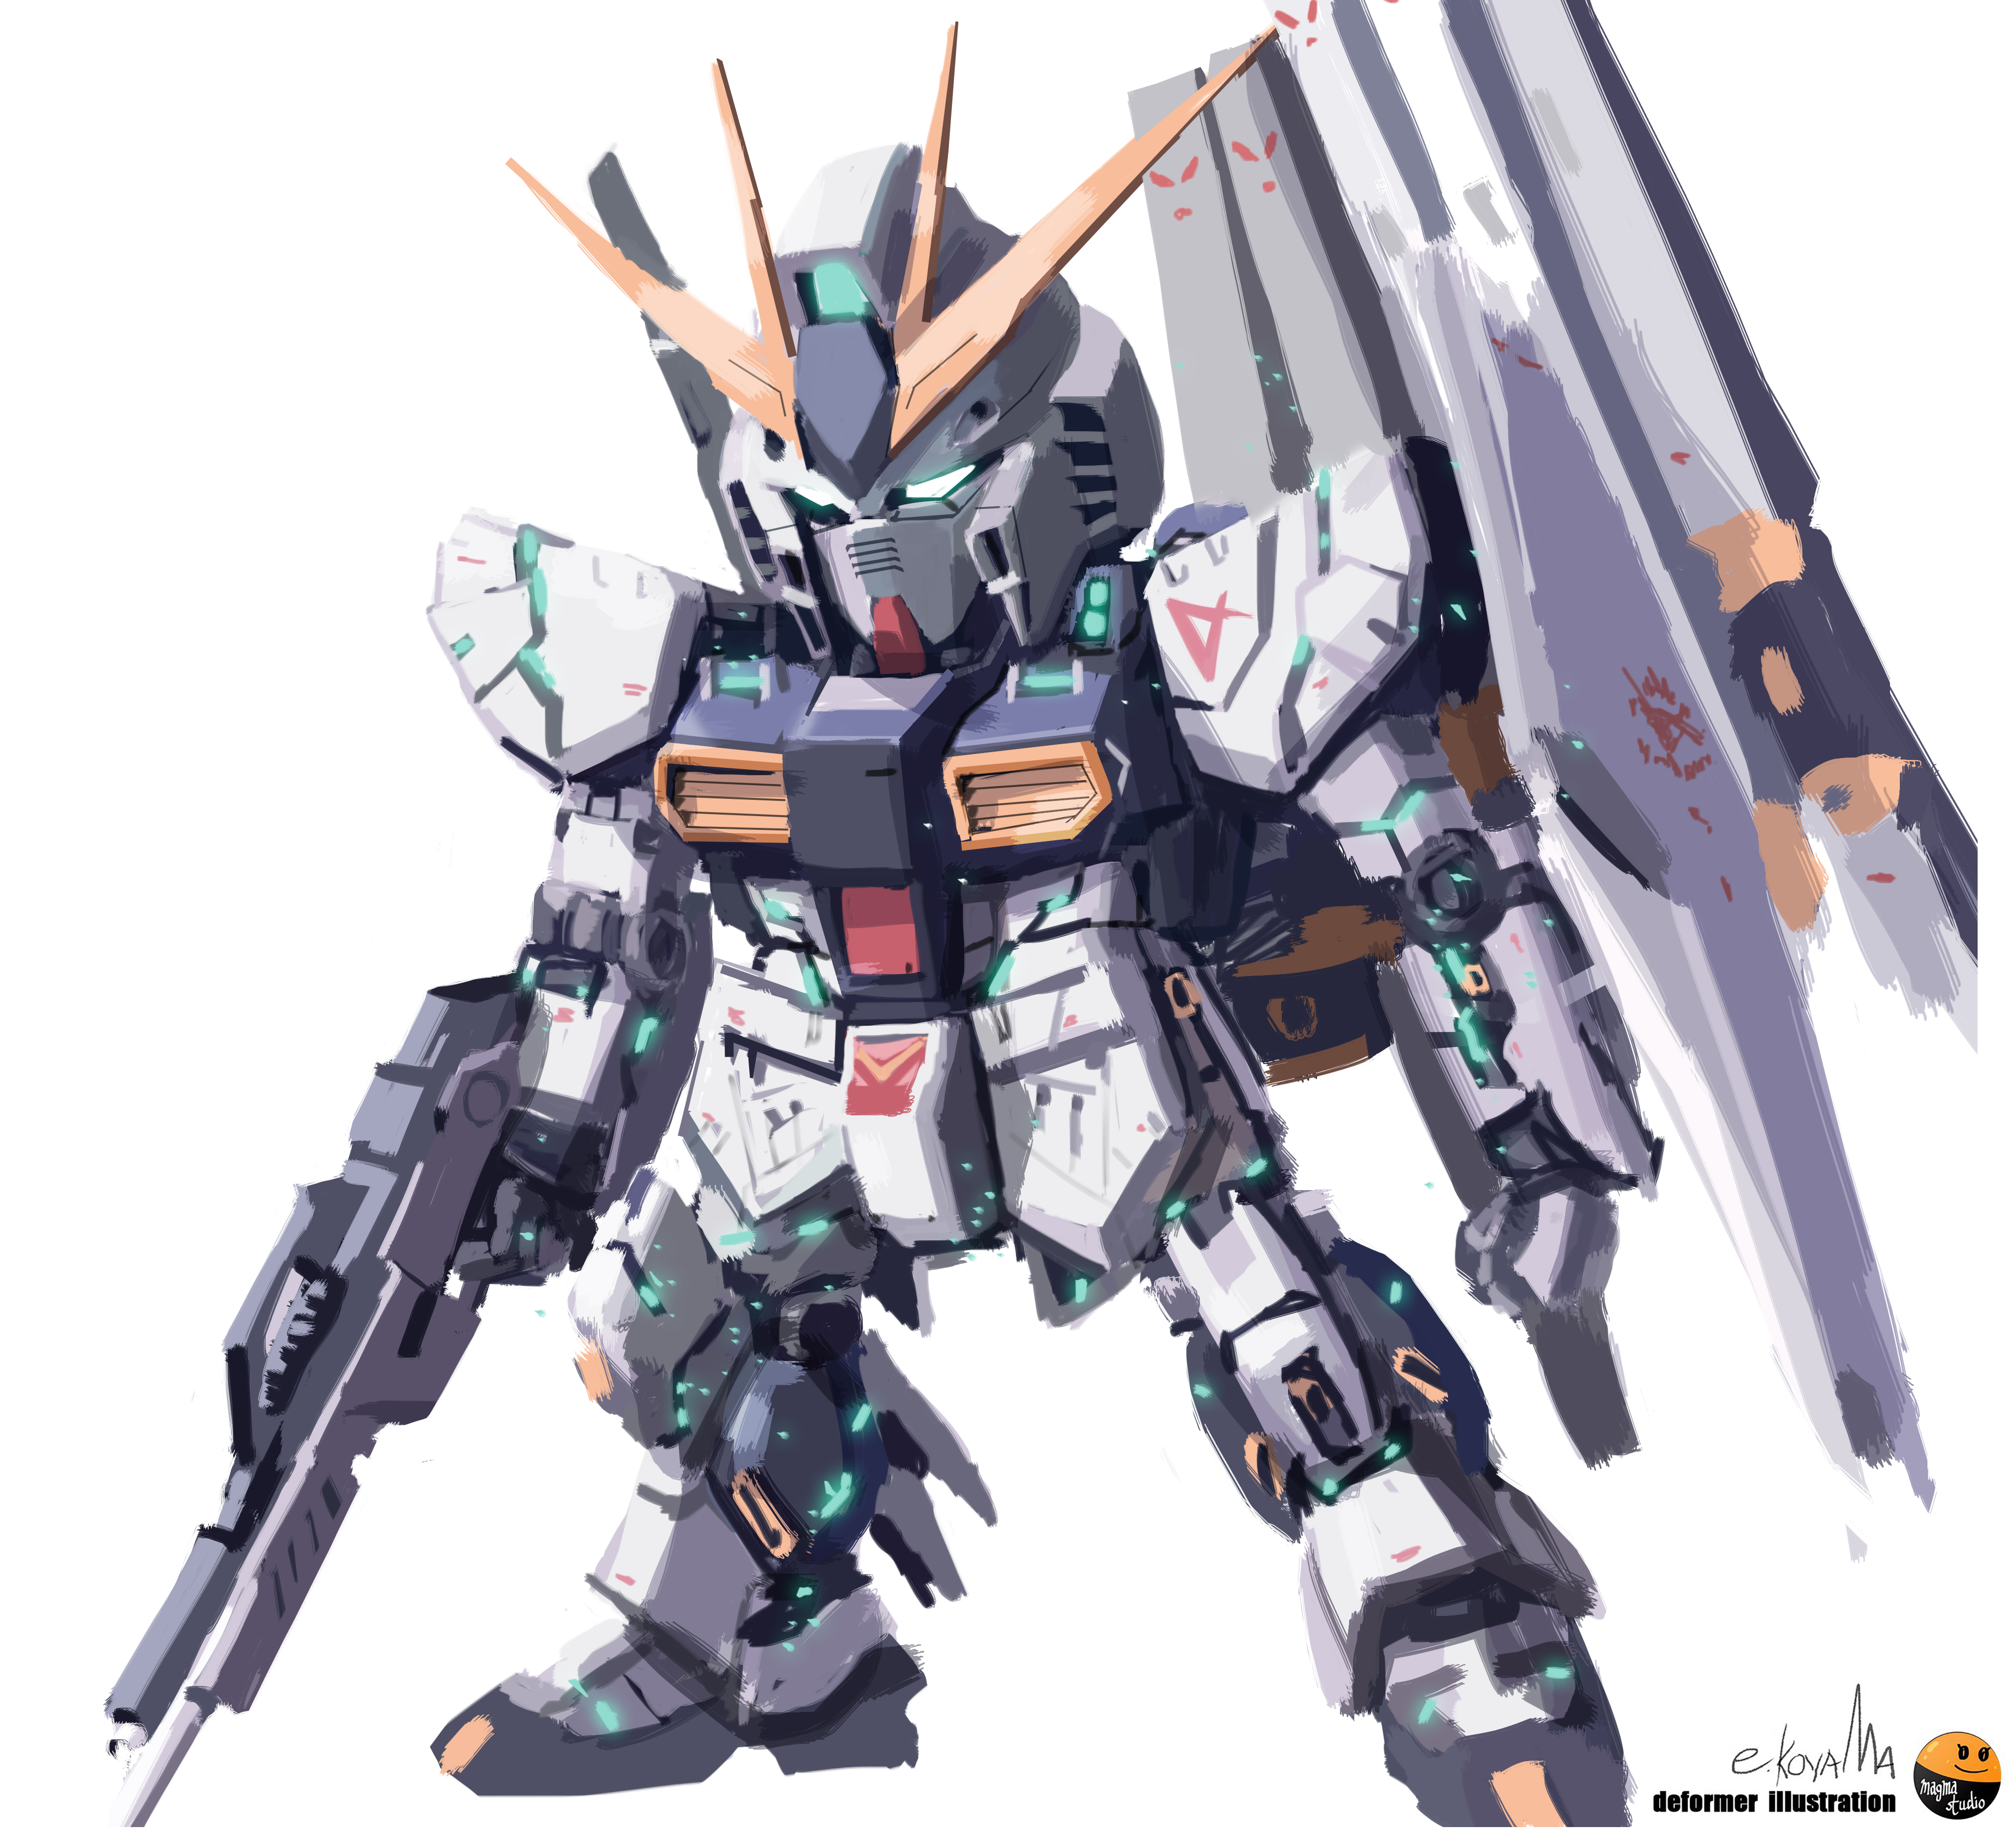 Anime Mechs Super Robot Taisen Gundam Artwork Digital Art Fan Art RX 93 V Gundam Mobile Suit Gundam  4096x3724